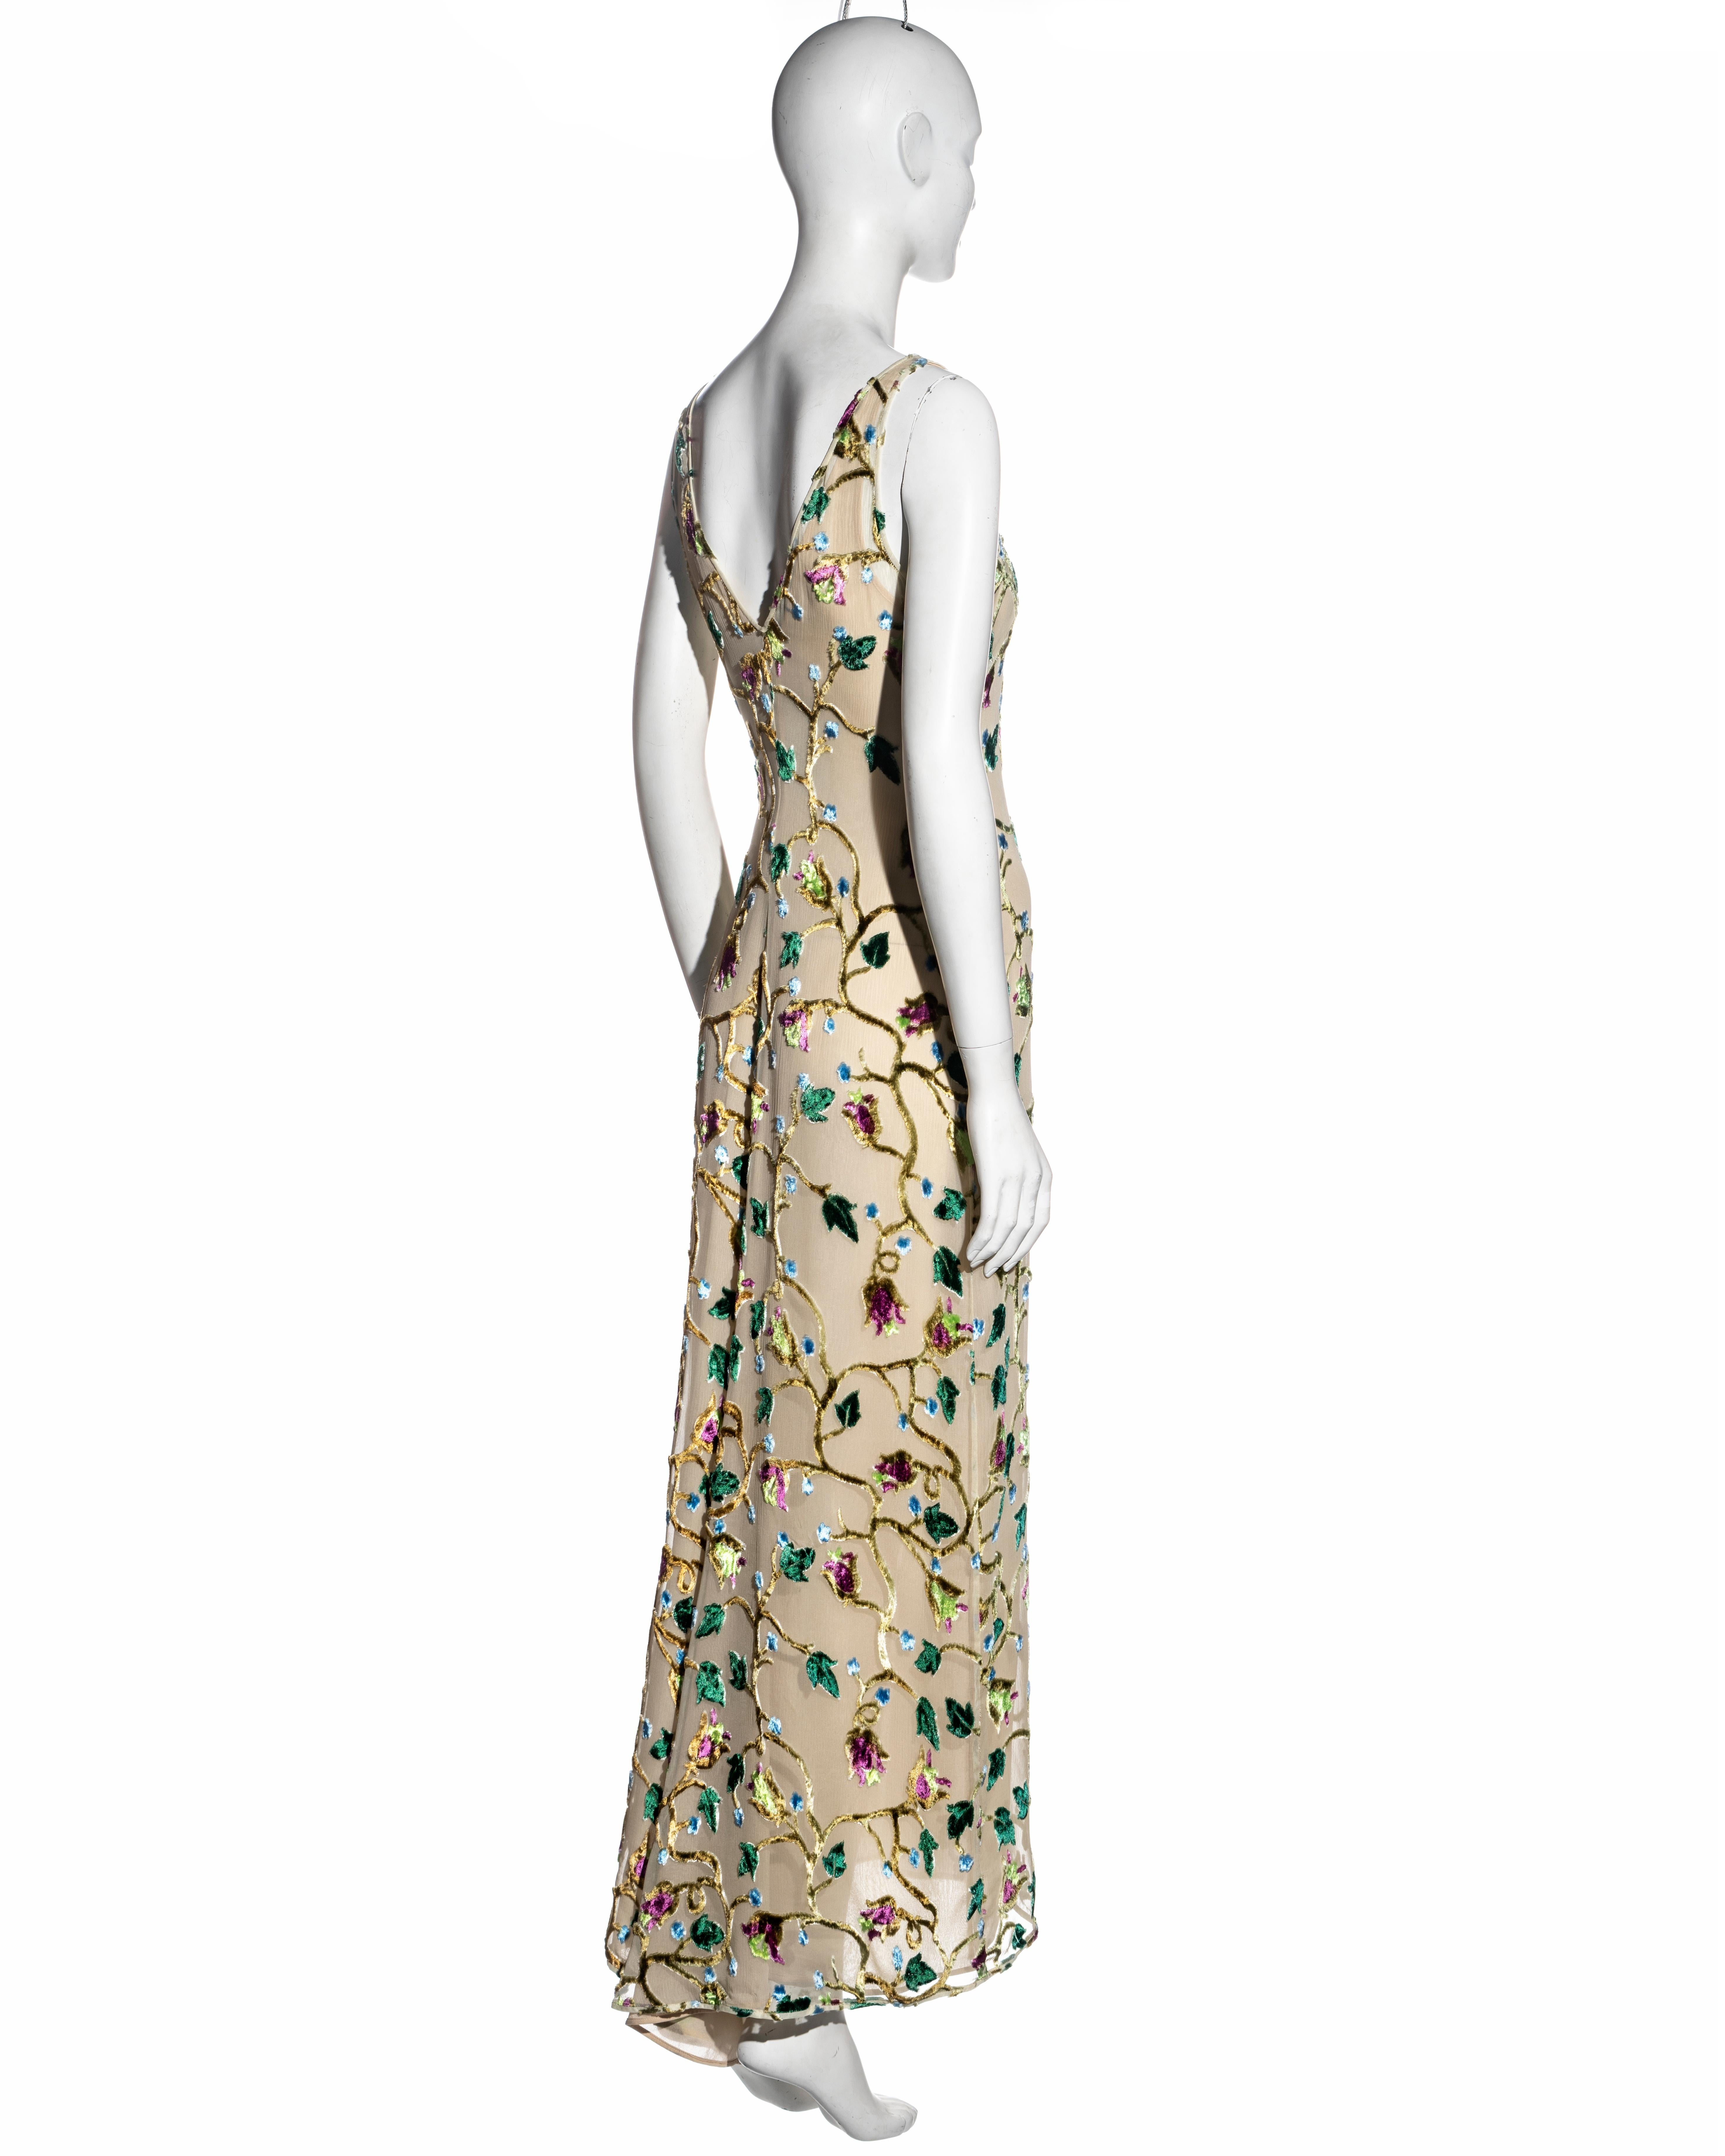 Prada by Miuccia Prada ivory silk devore evening dress, ss 1997 1